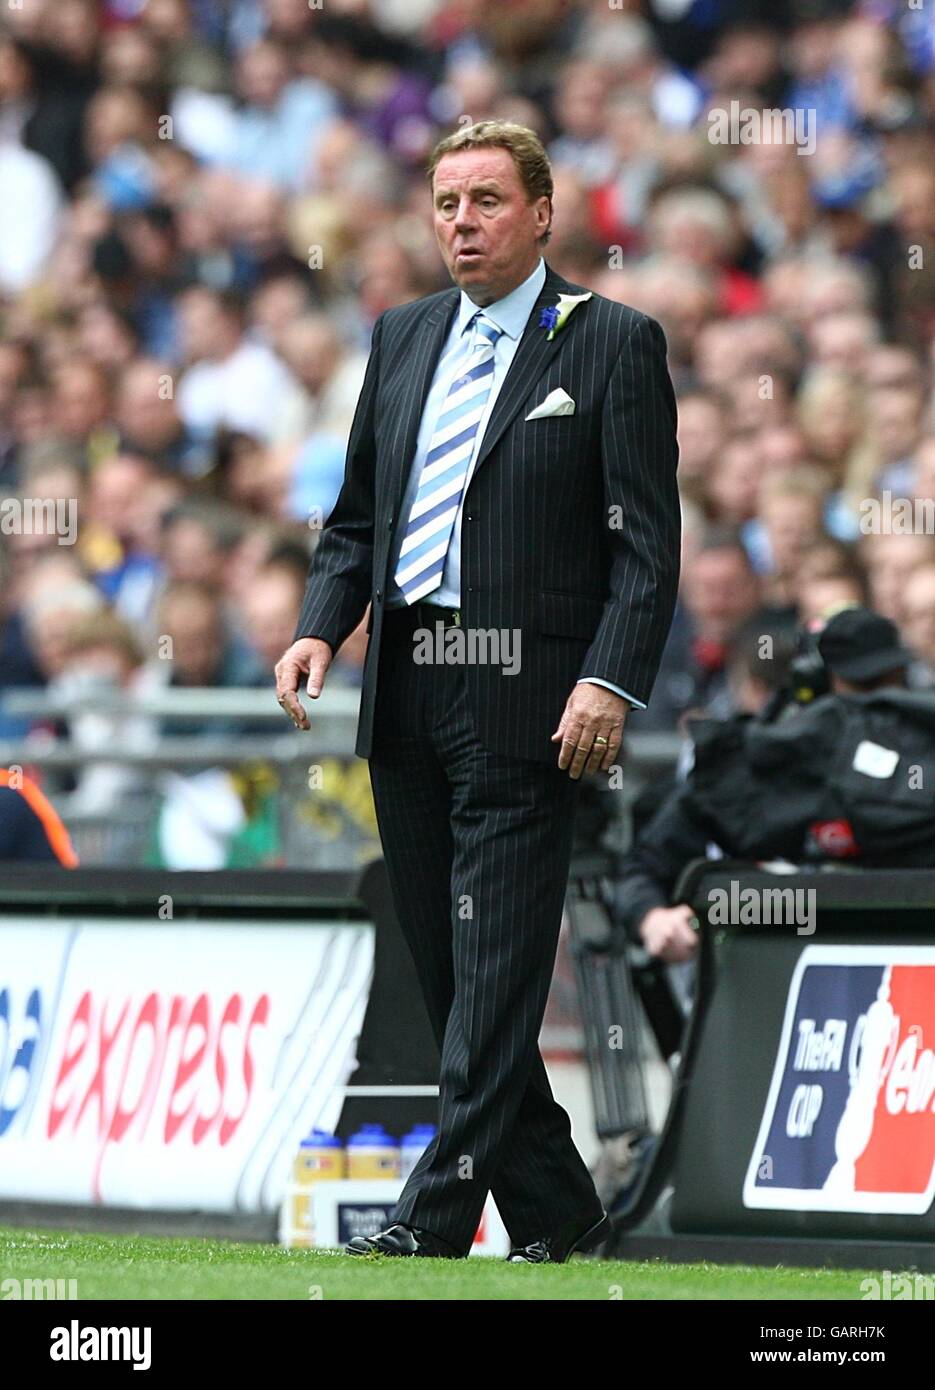 Calcio - fa Cup - finale - Portsmouth v Cardiff City - Stadio di Wembley. Harry Redknapp, direttore di Portsmouth, è sulla linea di contatto Foto Stock